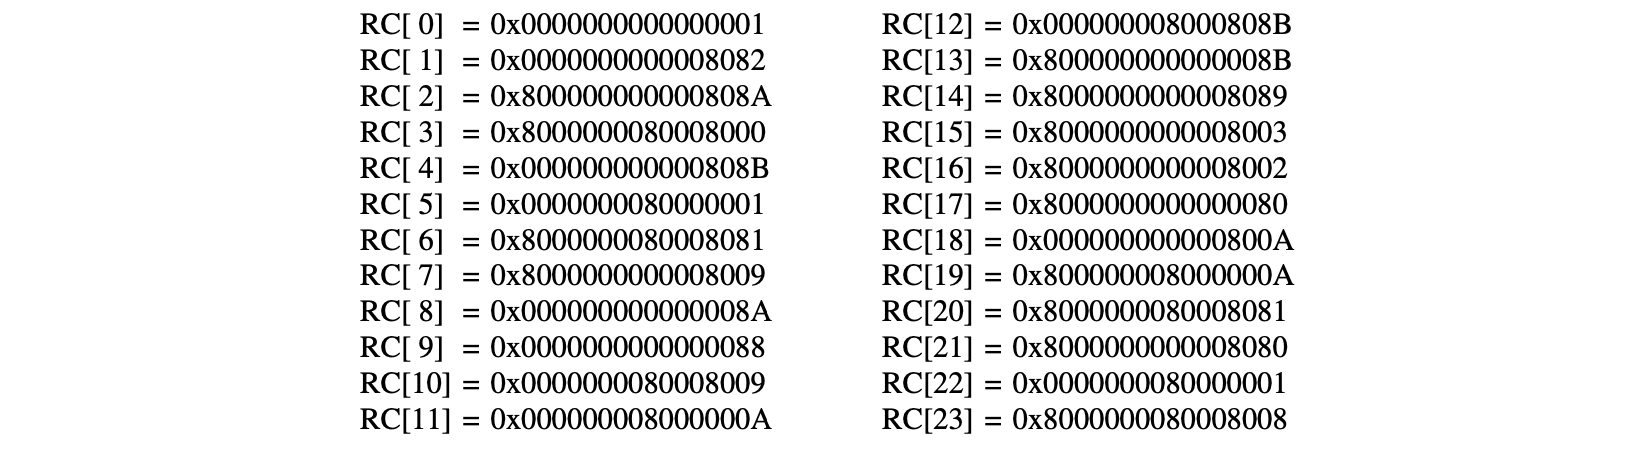 The 24 Round Constants in Hexadecimal